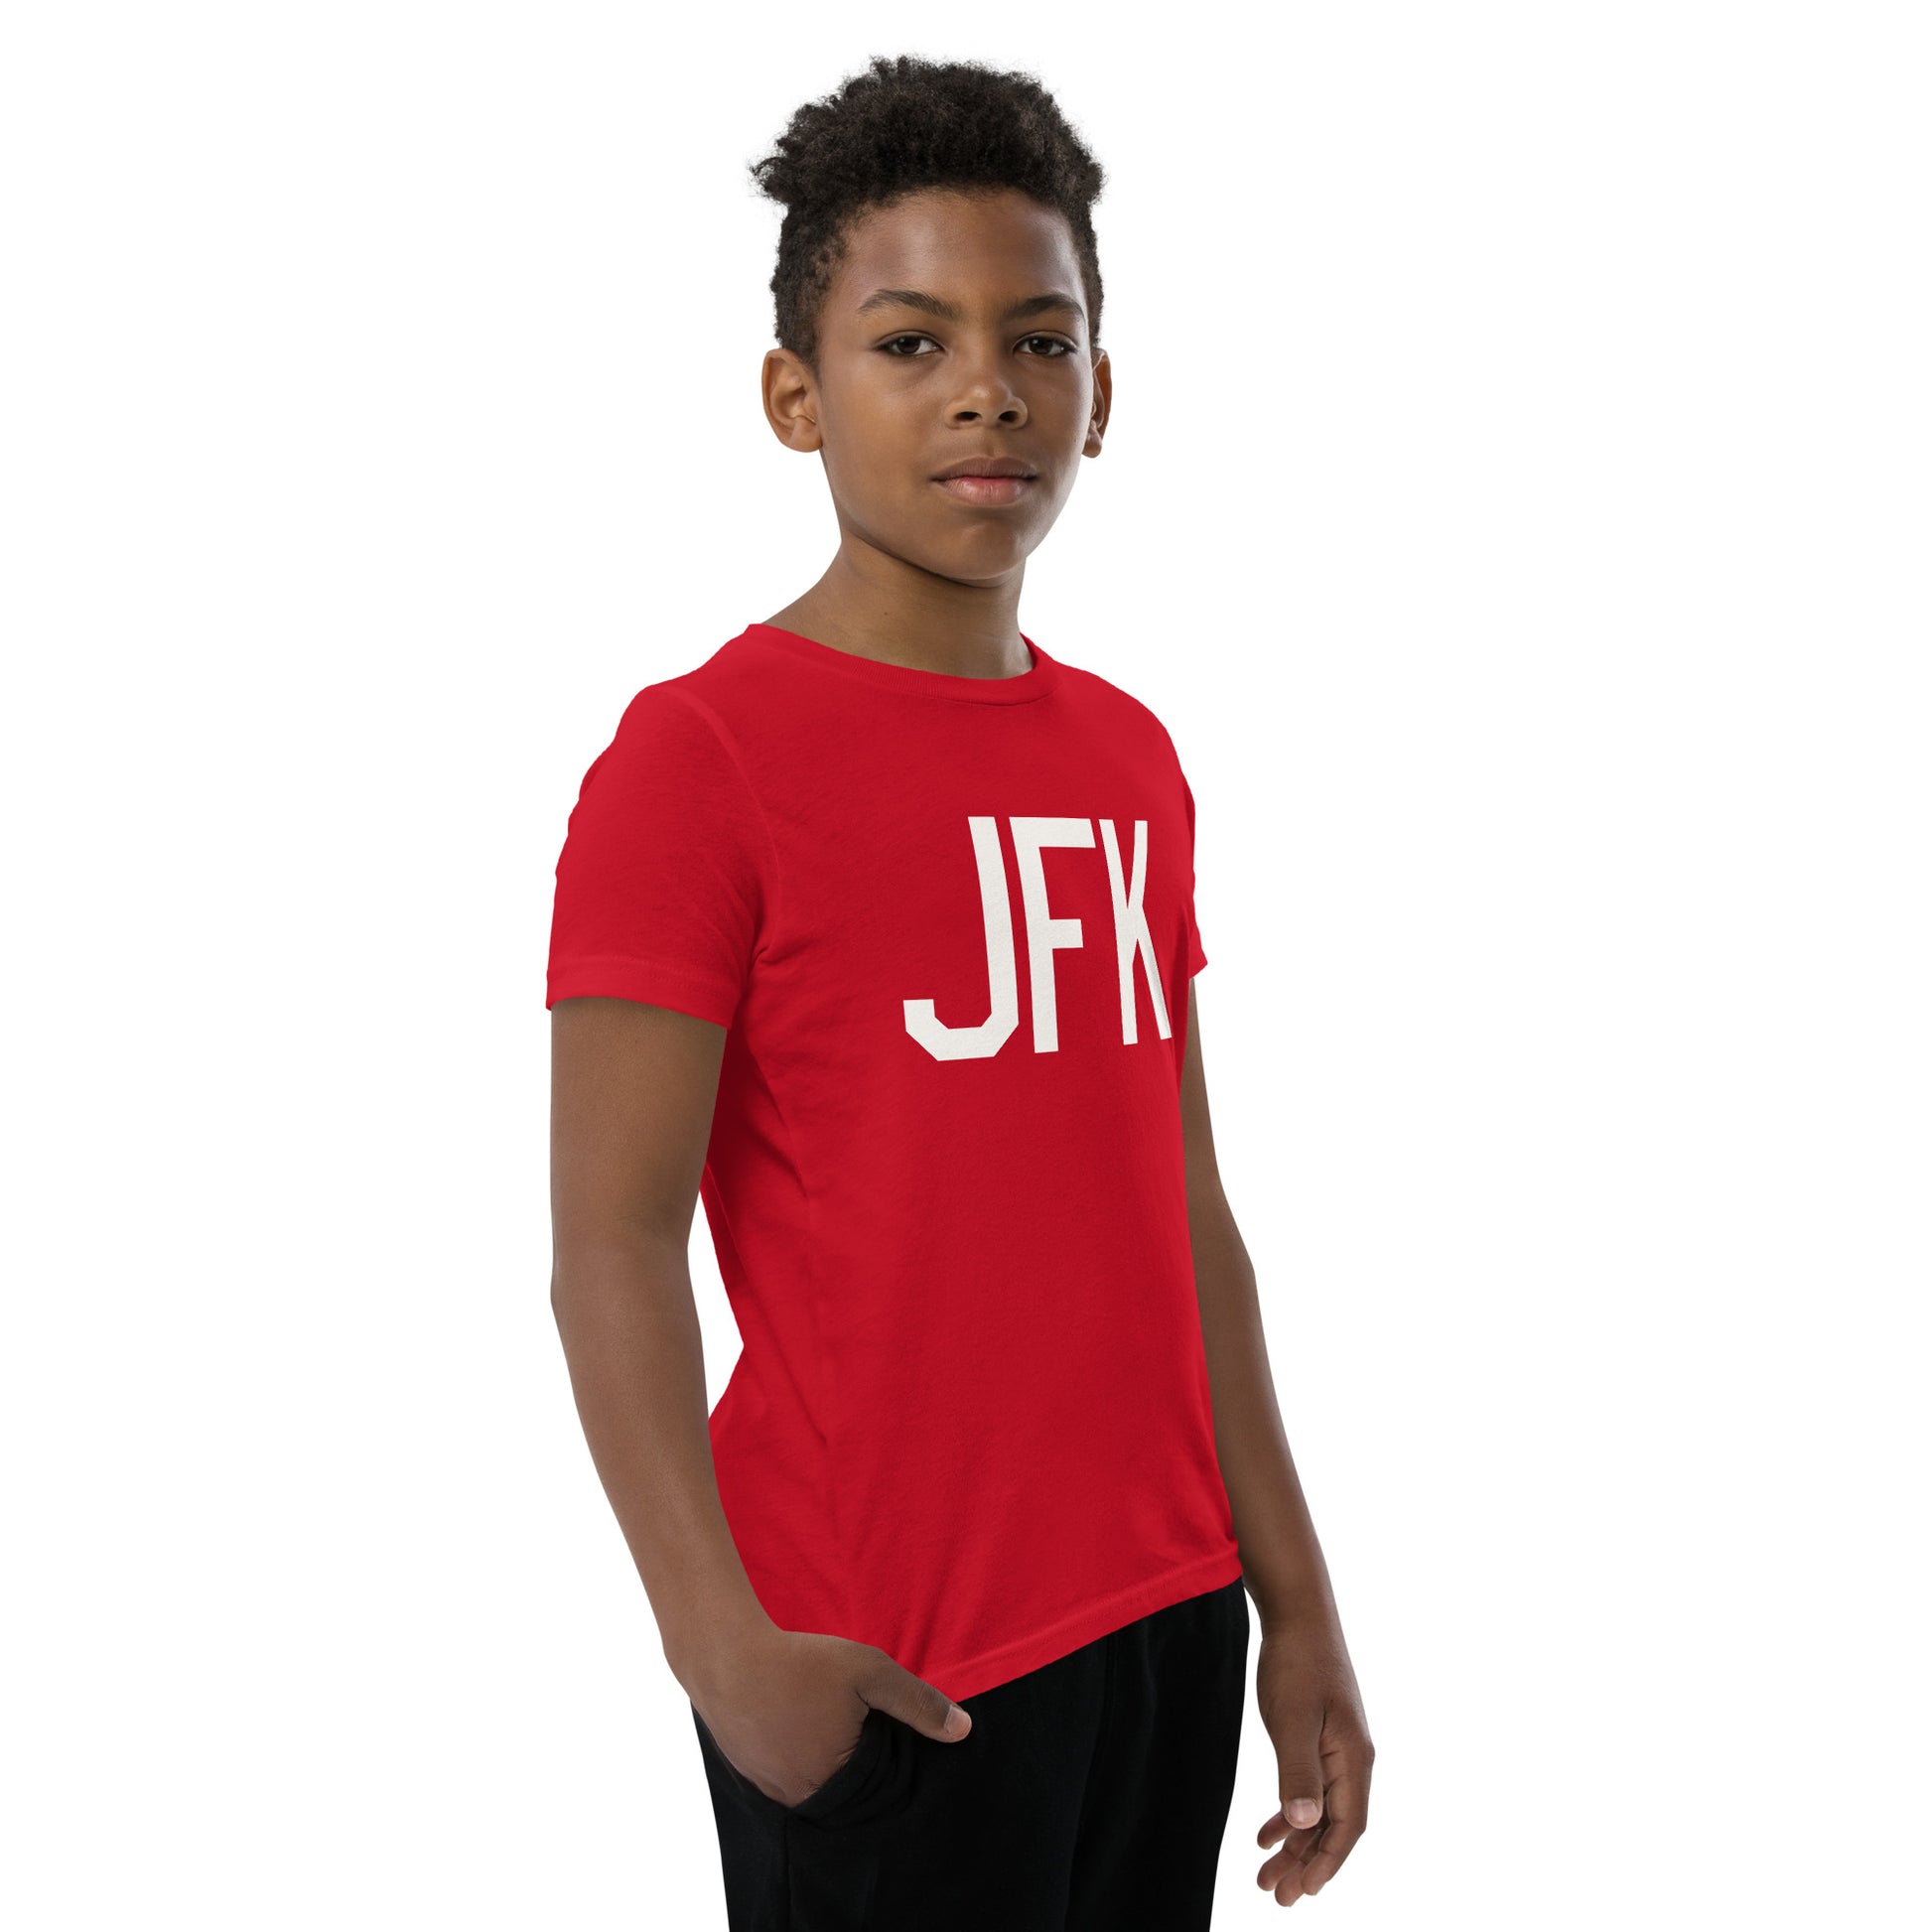 Kid's T-Shirt - White Graphic • JFK New York • YHM Designs - Image 10